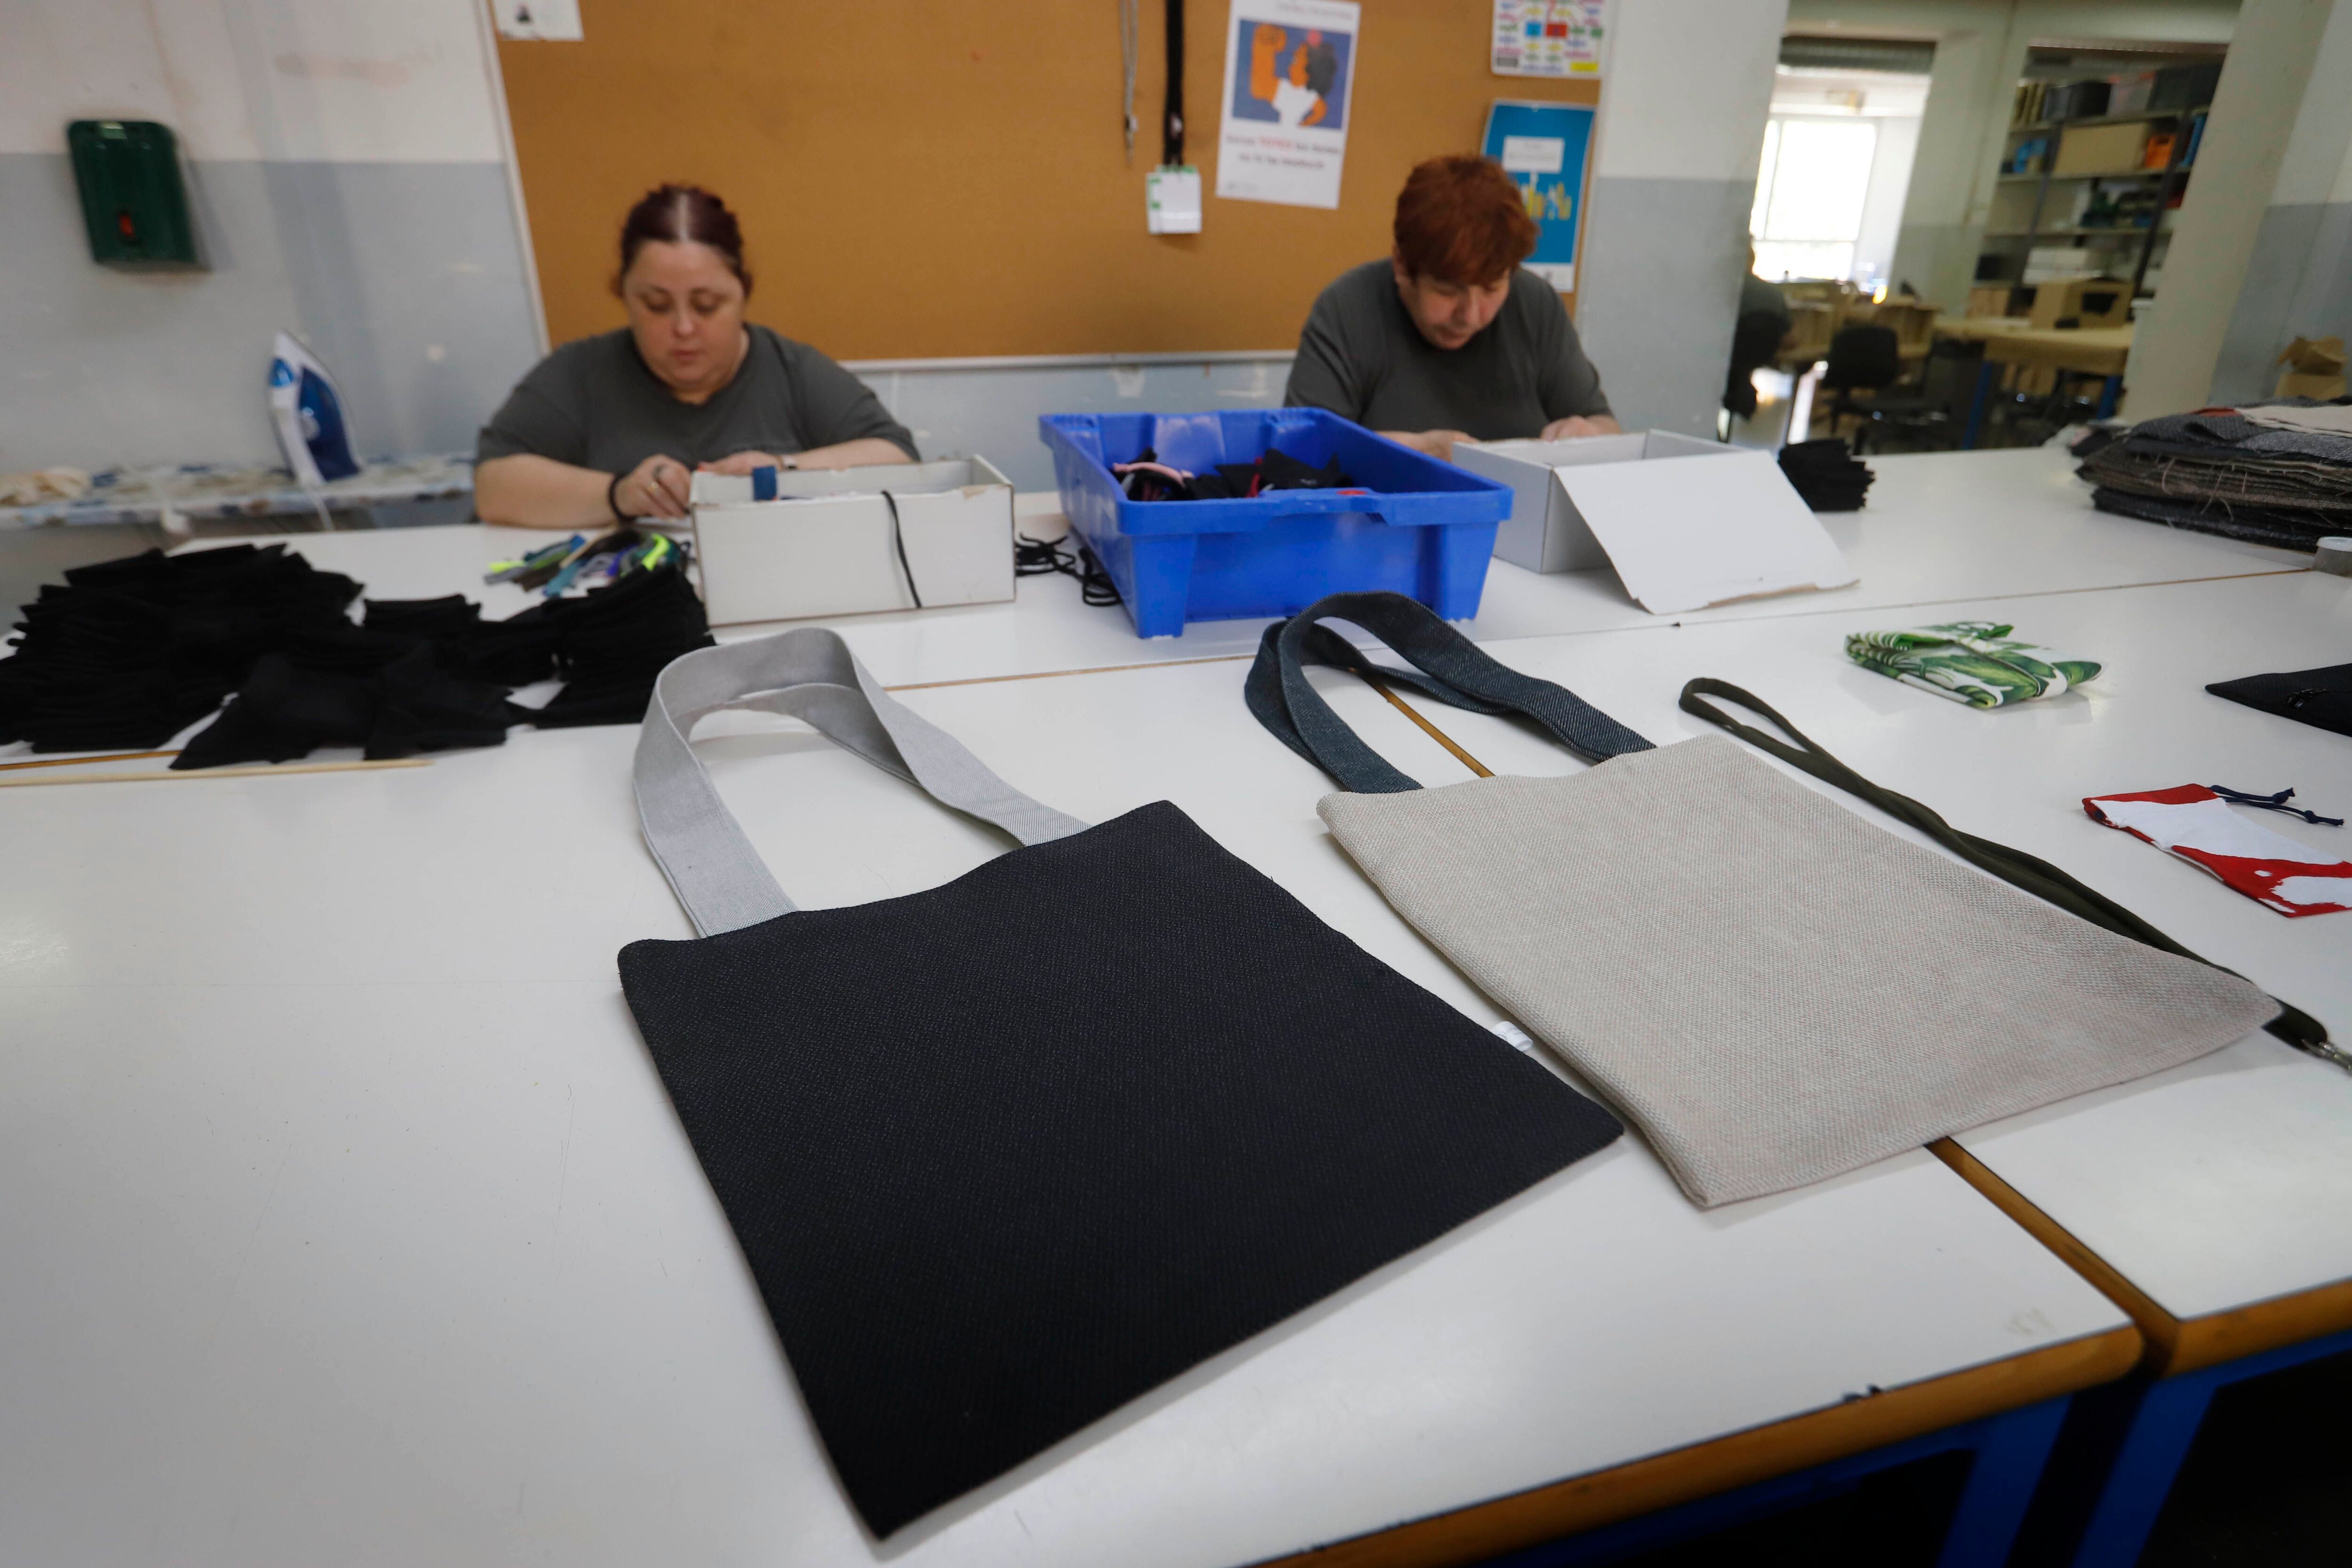 Dos trabajadoras con discapacidad fabrican bolsas de tela a partir de tejidos sobrantes en la Fundación Rubricatus, en El Prat de Llobregat (Barcelona).